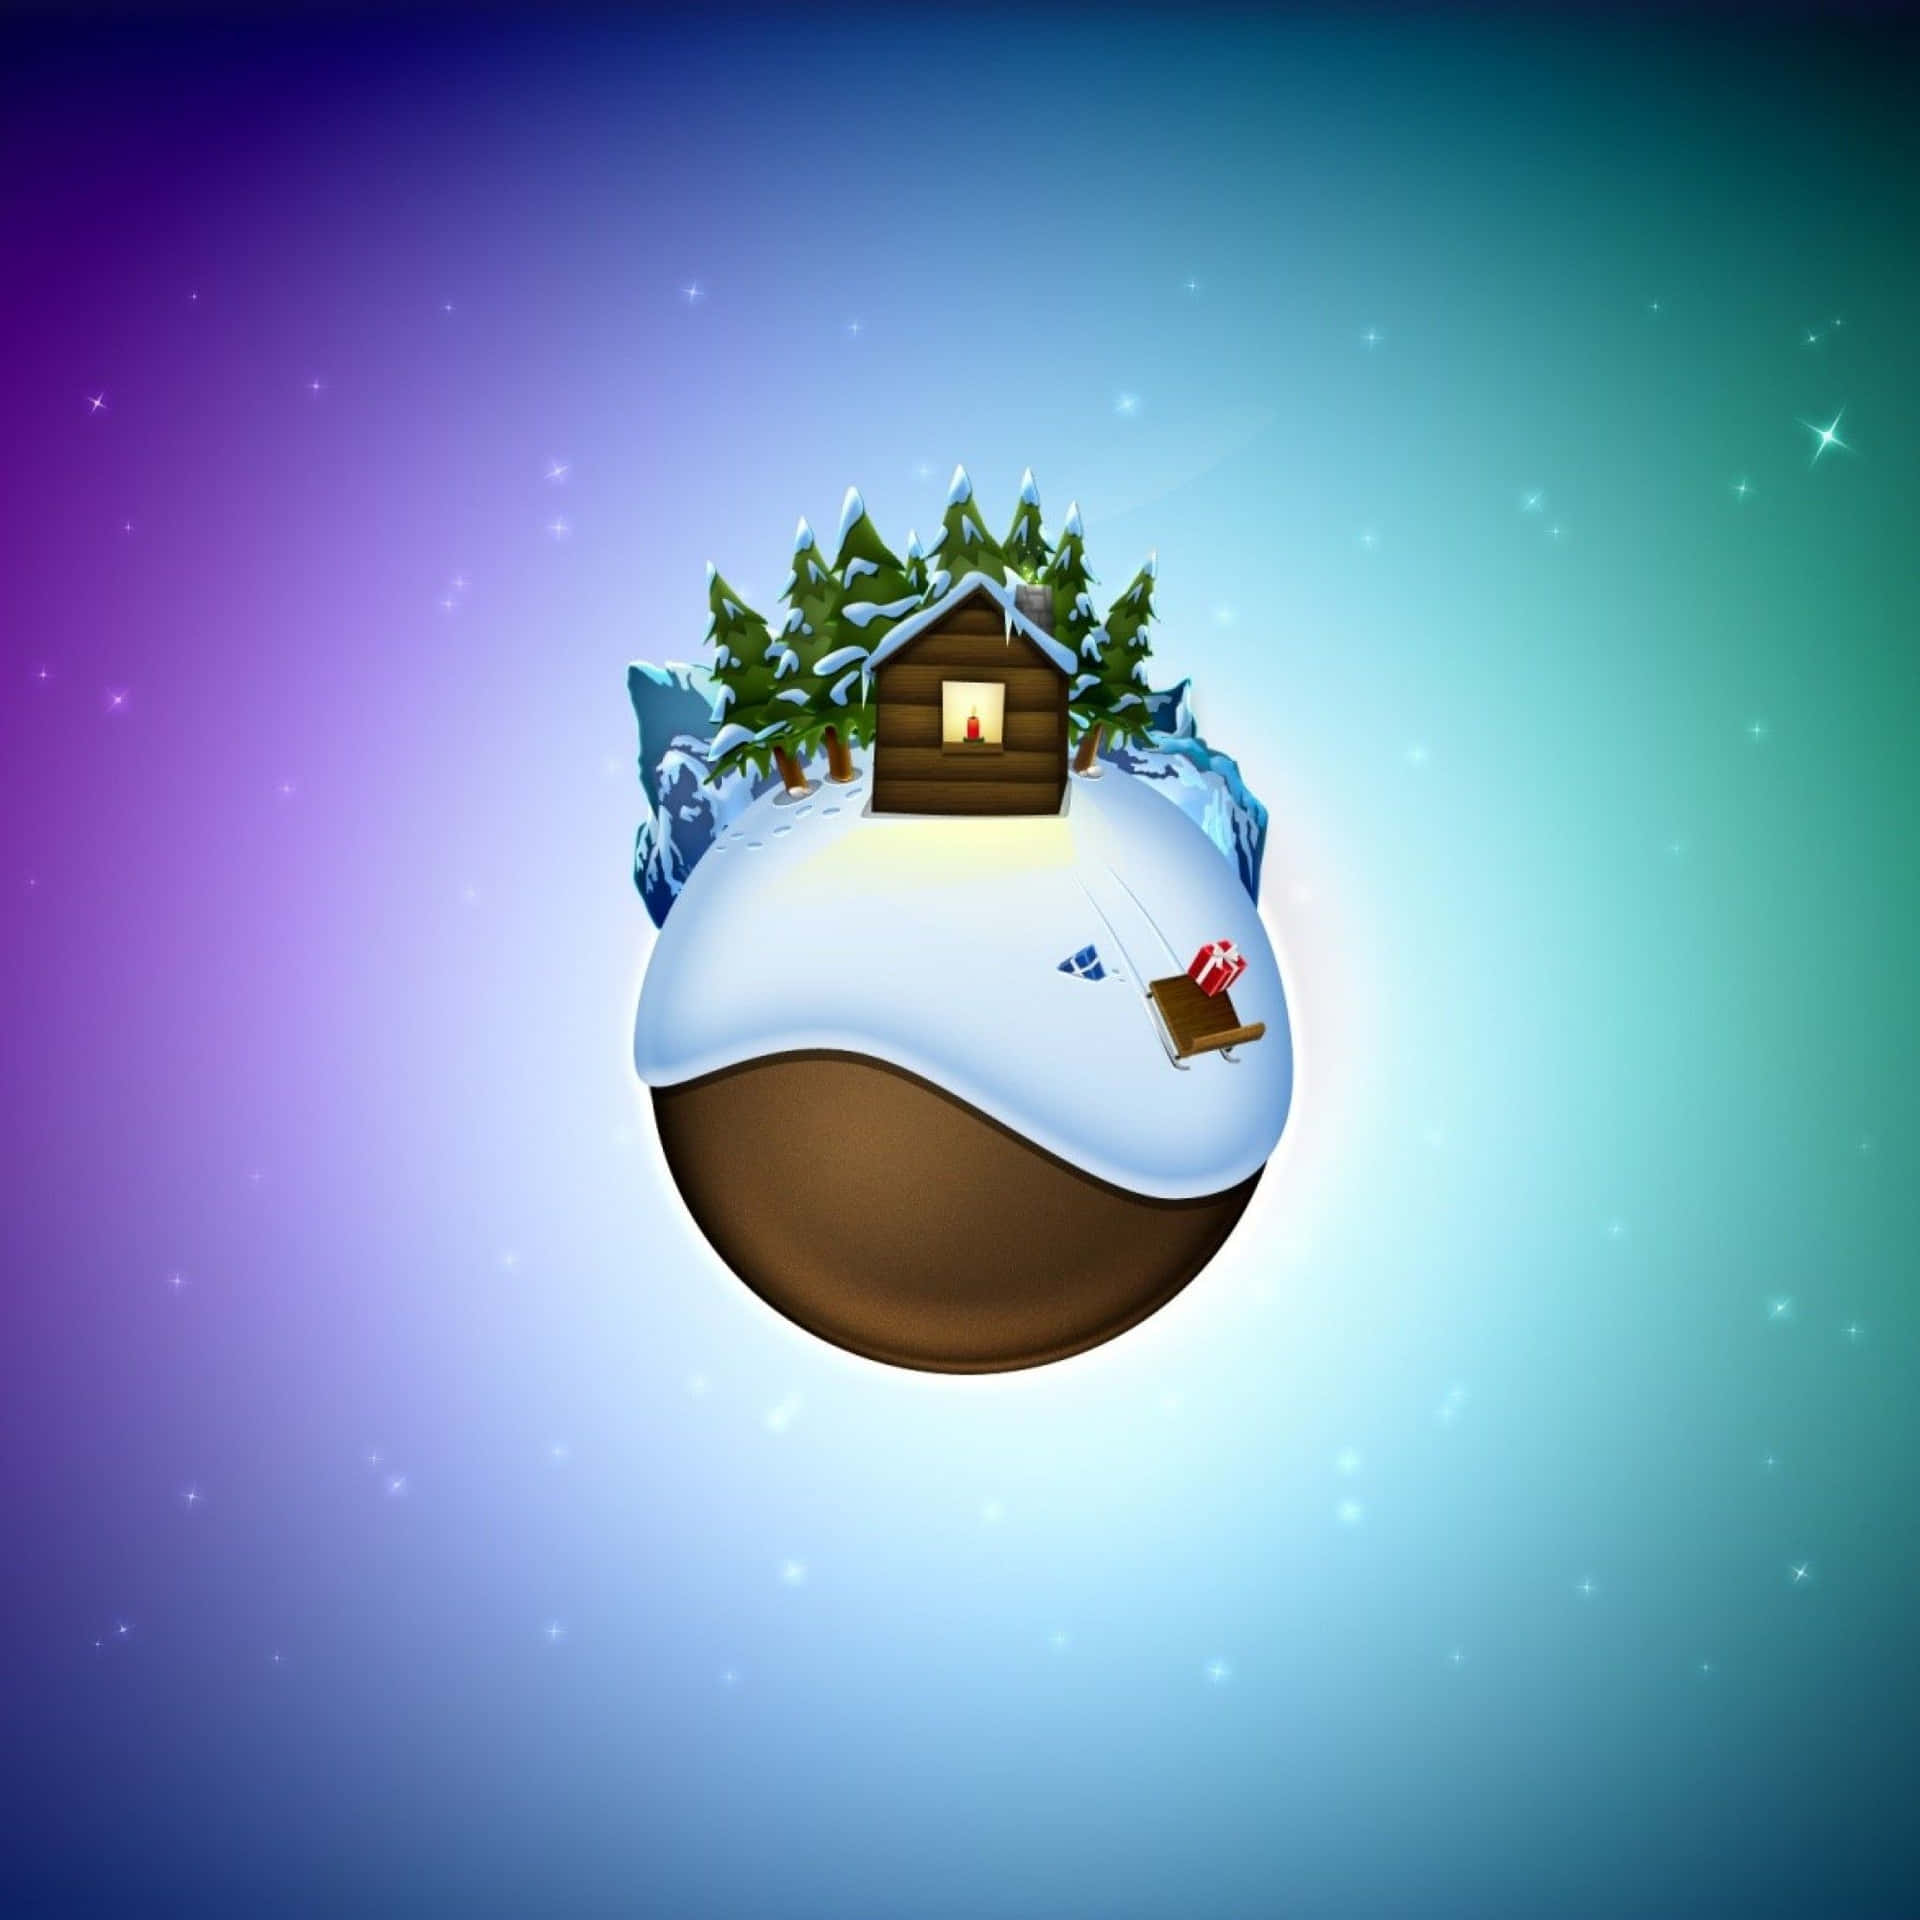 Umaesfera De Natal Com Uma Casa Nela. Papel de Parede